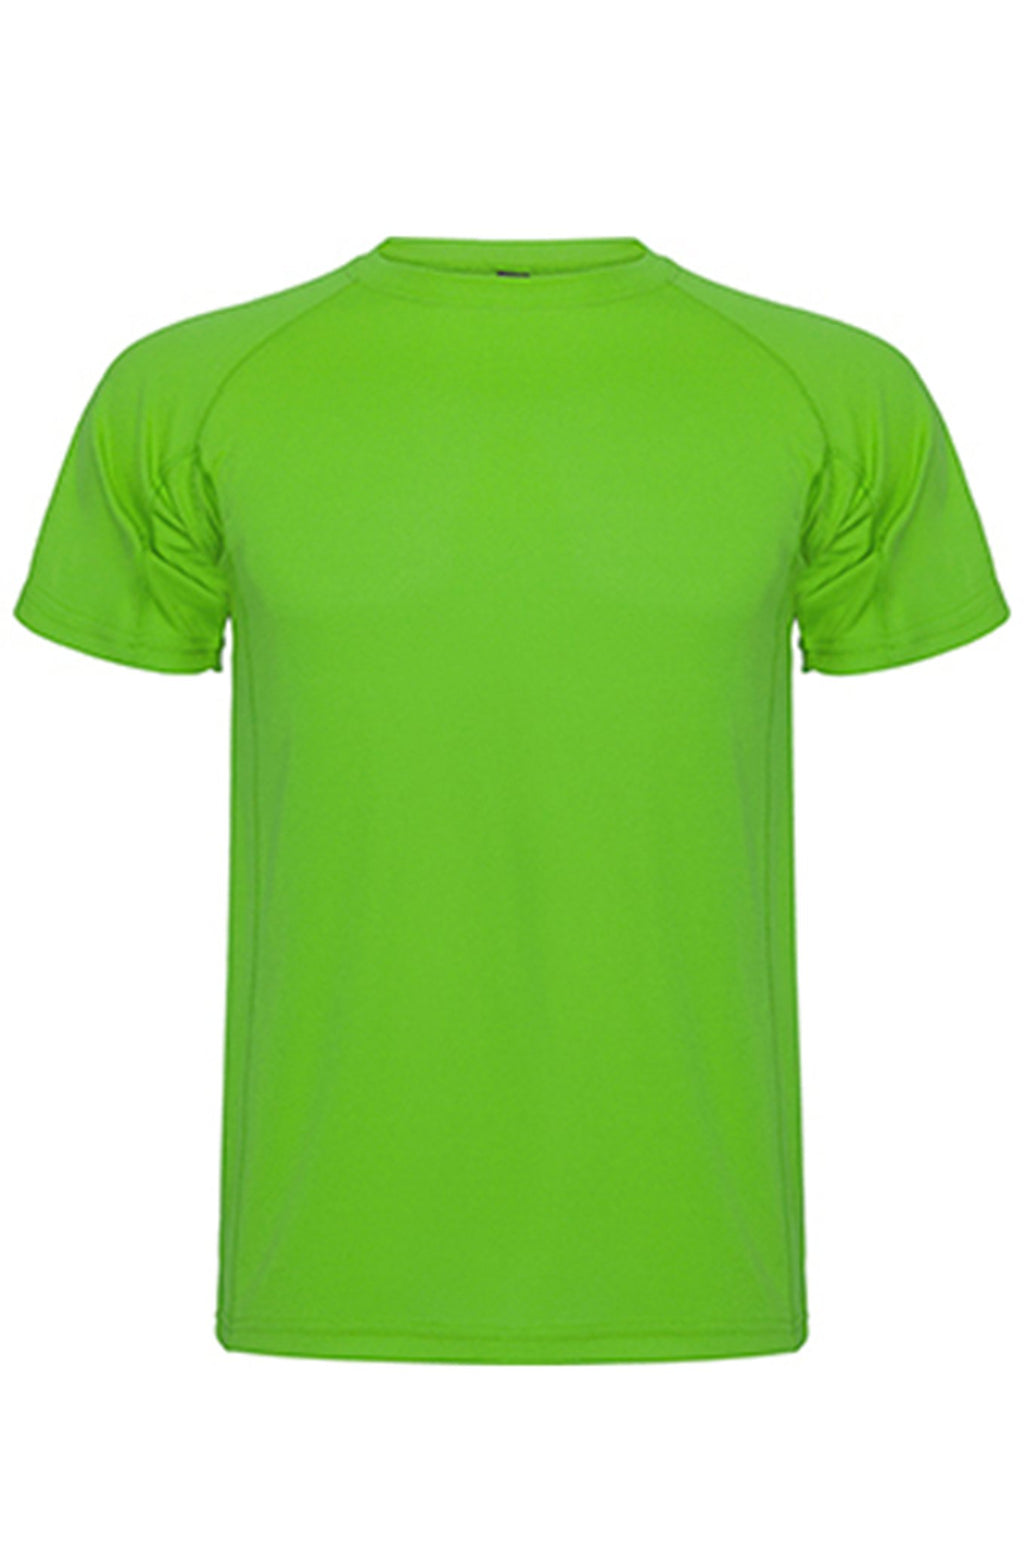 Harjoittelu T -paita - vihreä